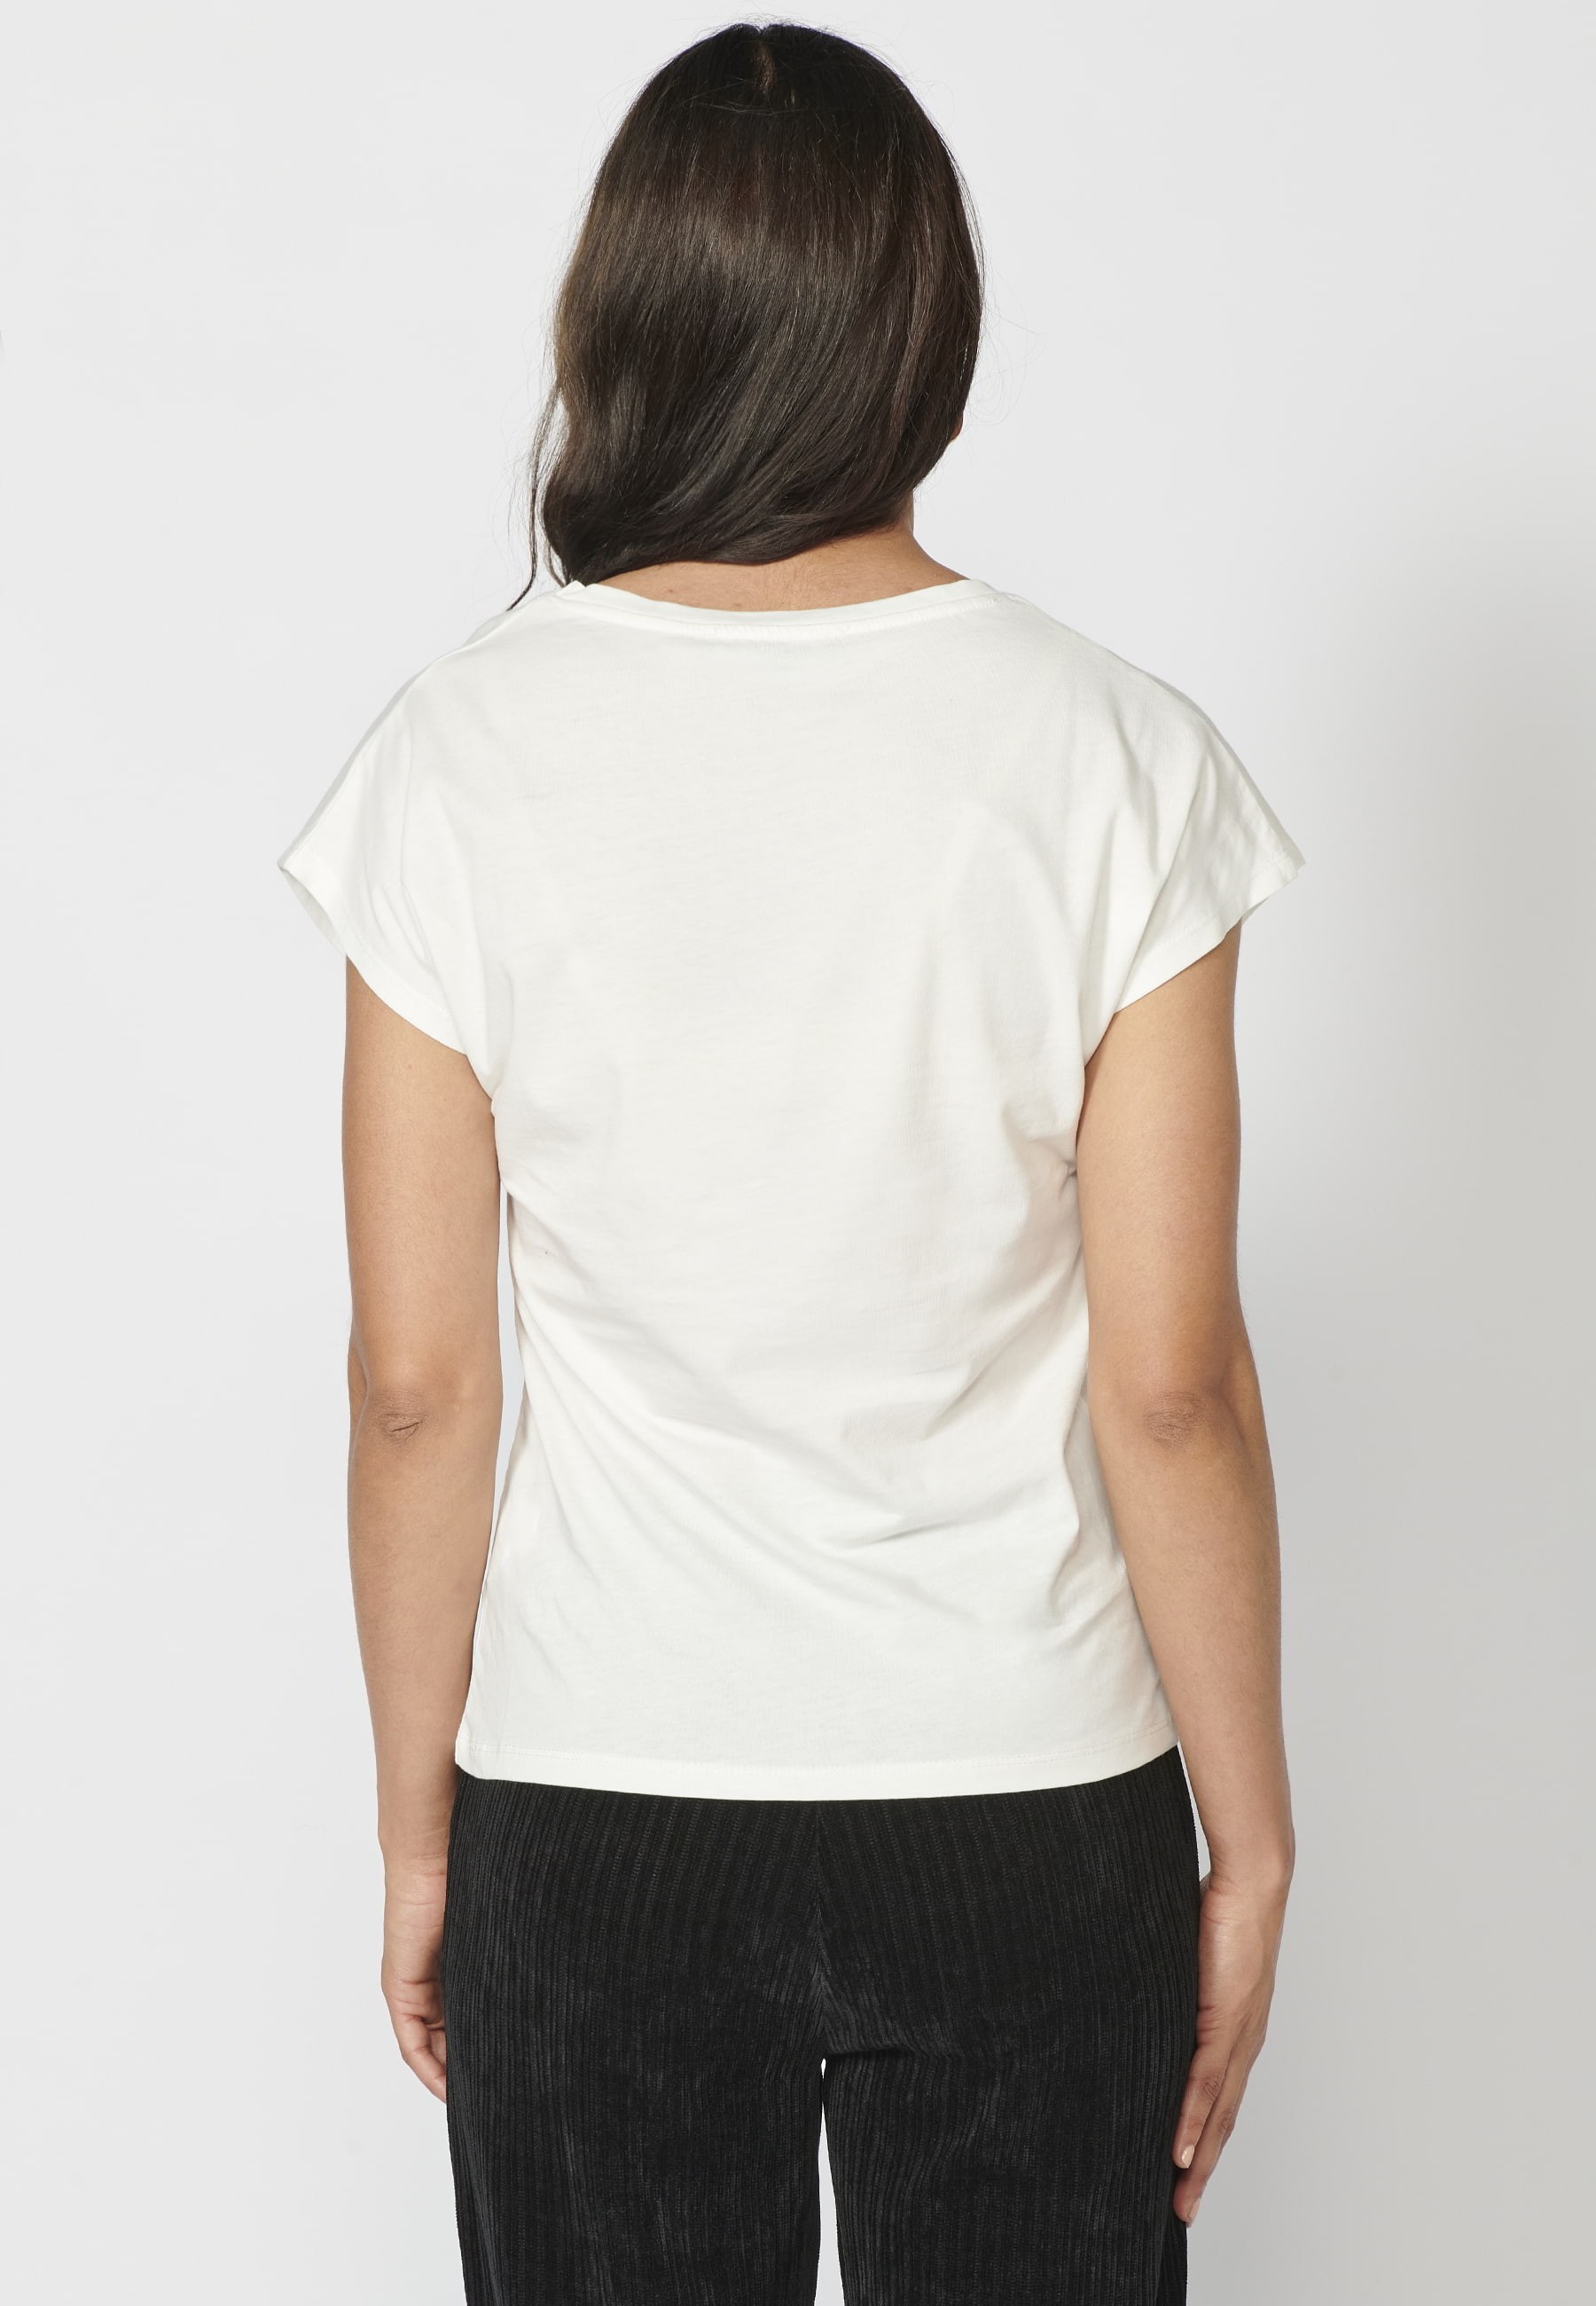 Samarreta top de màniga curta de Cotó coll rodó i estampat davanter color Blanc per a Dona